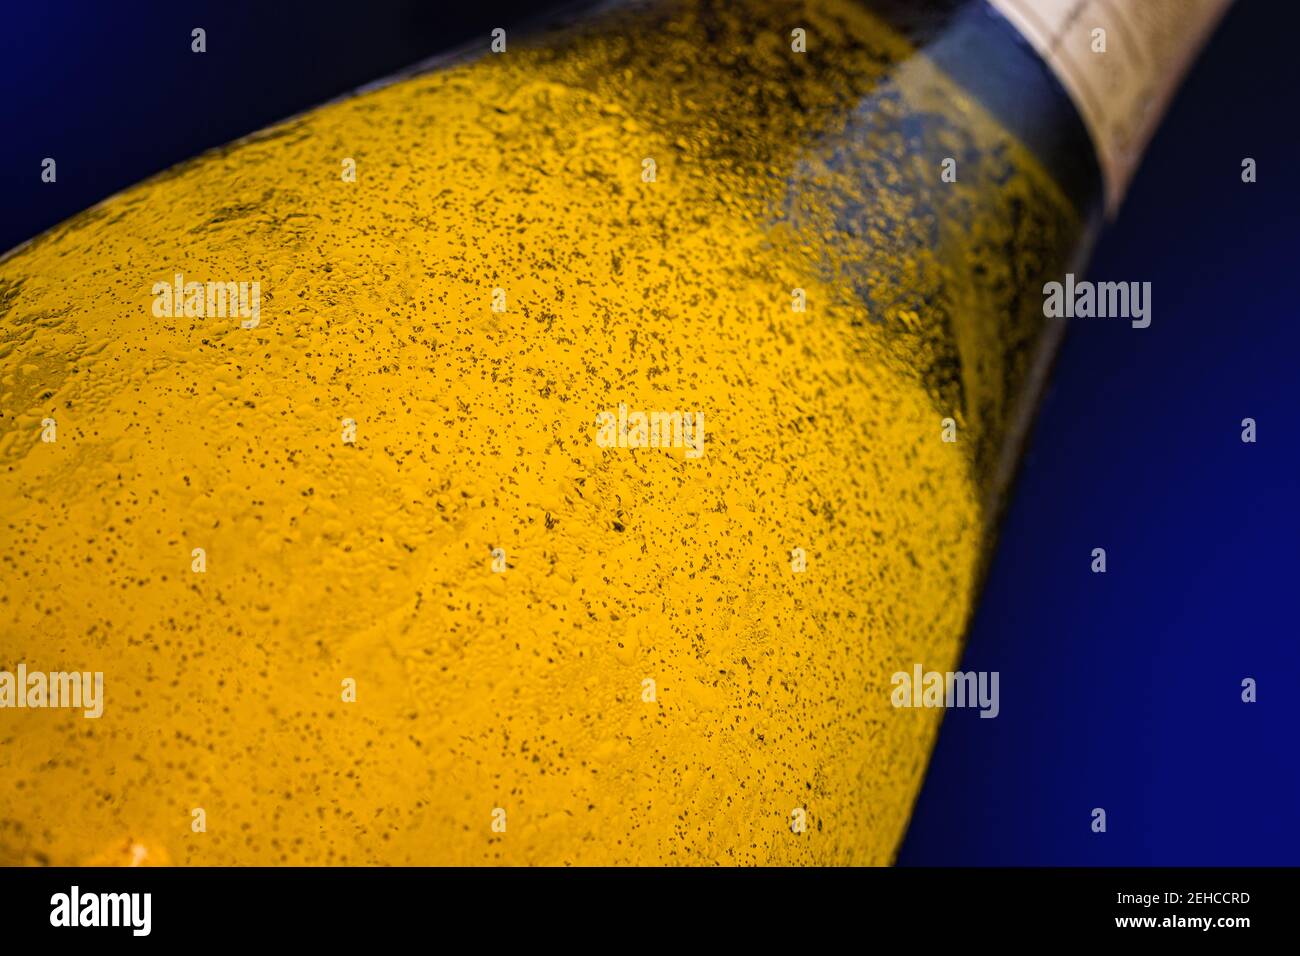 Una bebida alcohólica sobre un fondo azul negro. El vino espumoso dorado en una botella iluminada, de cerca. Foto de stock